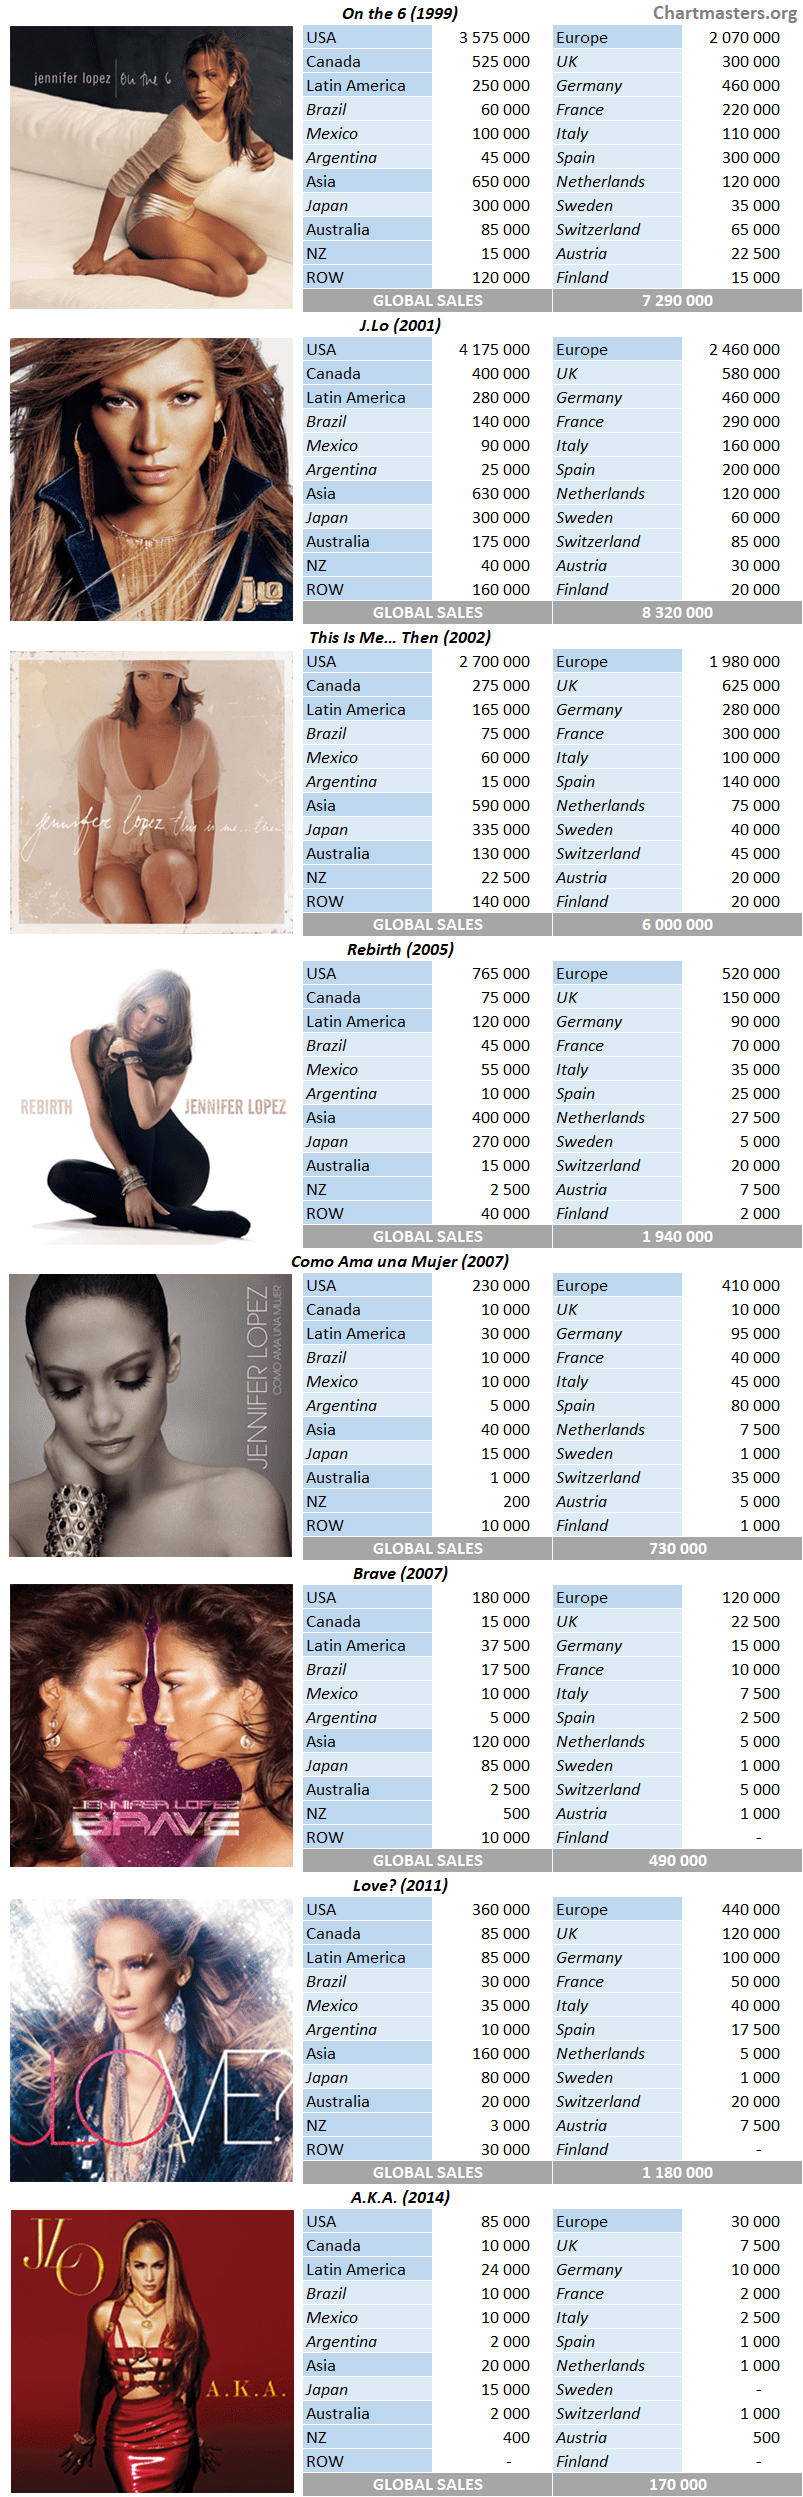 Jennifer Lopez album sales